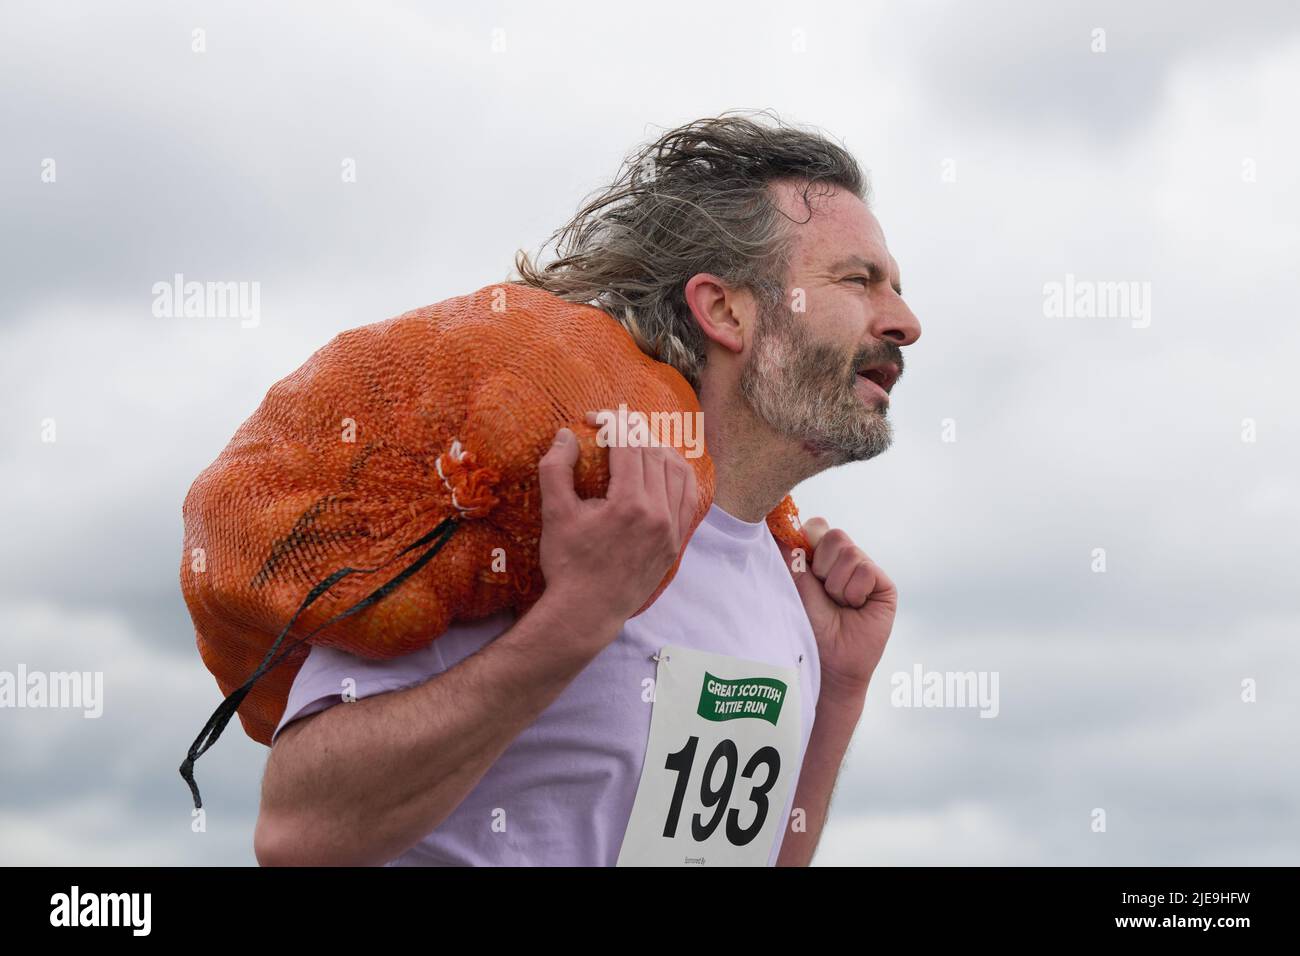 Édimbourg, Écosse, Royaume-Uni, 26 juin 2022. Vers 300, participez à la Great Scottish Tattie Run de 6th à Silverknowes avec des concurrents qui ont terminé un parcours de 1 miles portant 10 kg dans la catégorie des femmes ou 20 kg de pommes de terre dans la catégorie des hommes. Credit sst/alamy Live News Banque D'Images